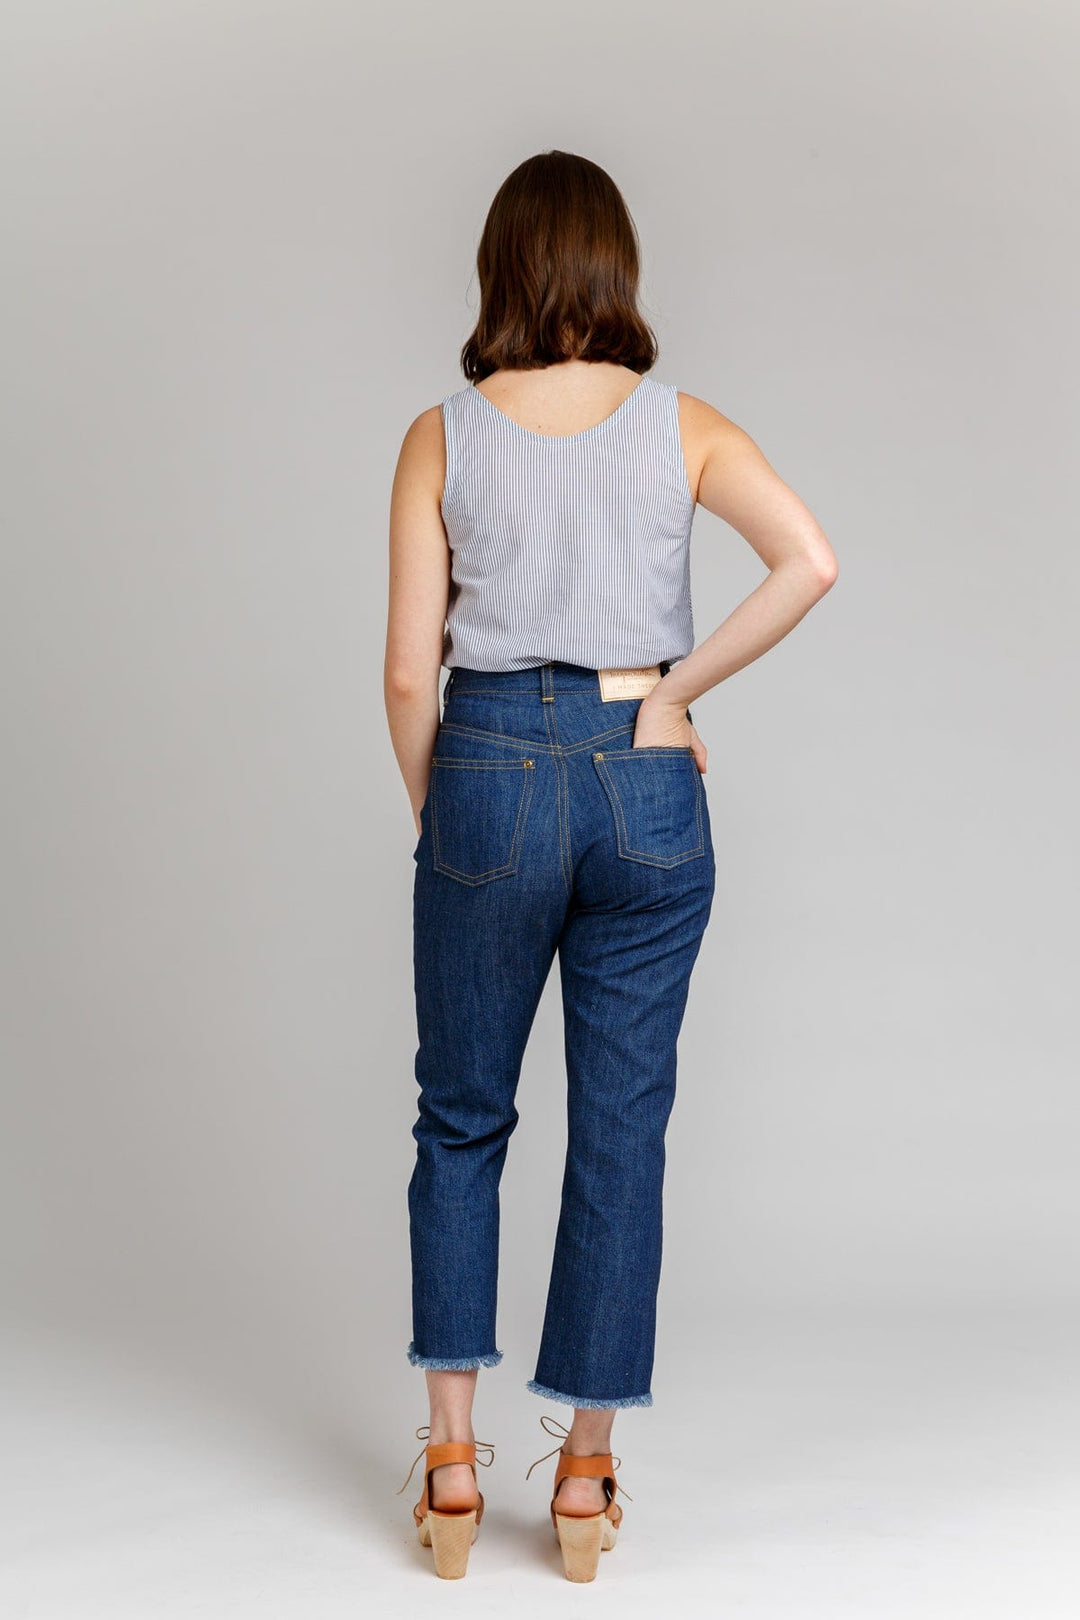 Dawn Ridgid Jeans - Sizes 0-20 - Megan Nielsen